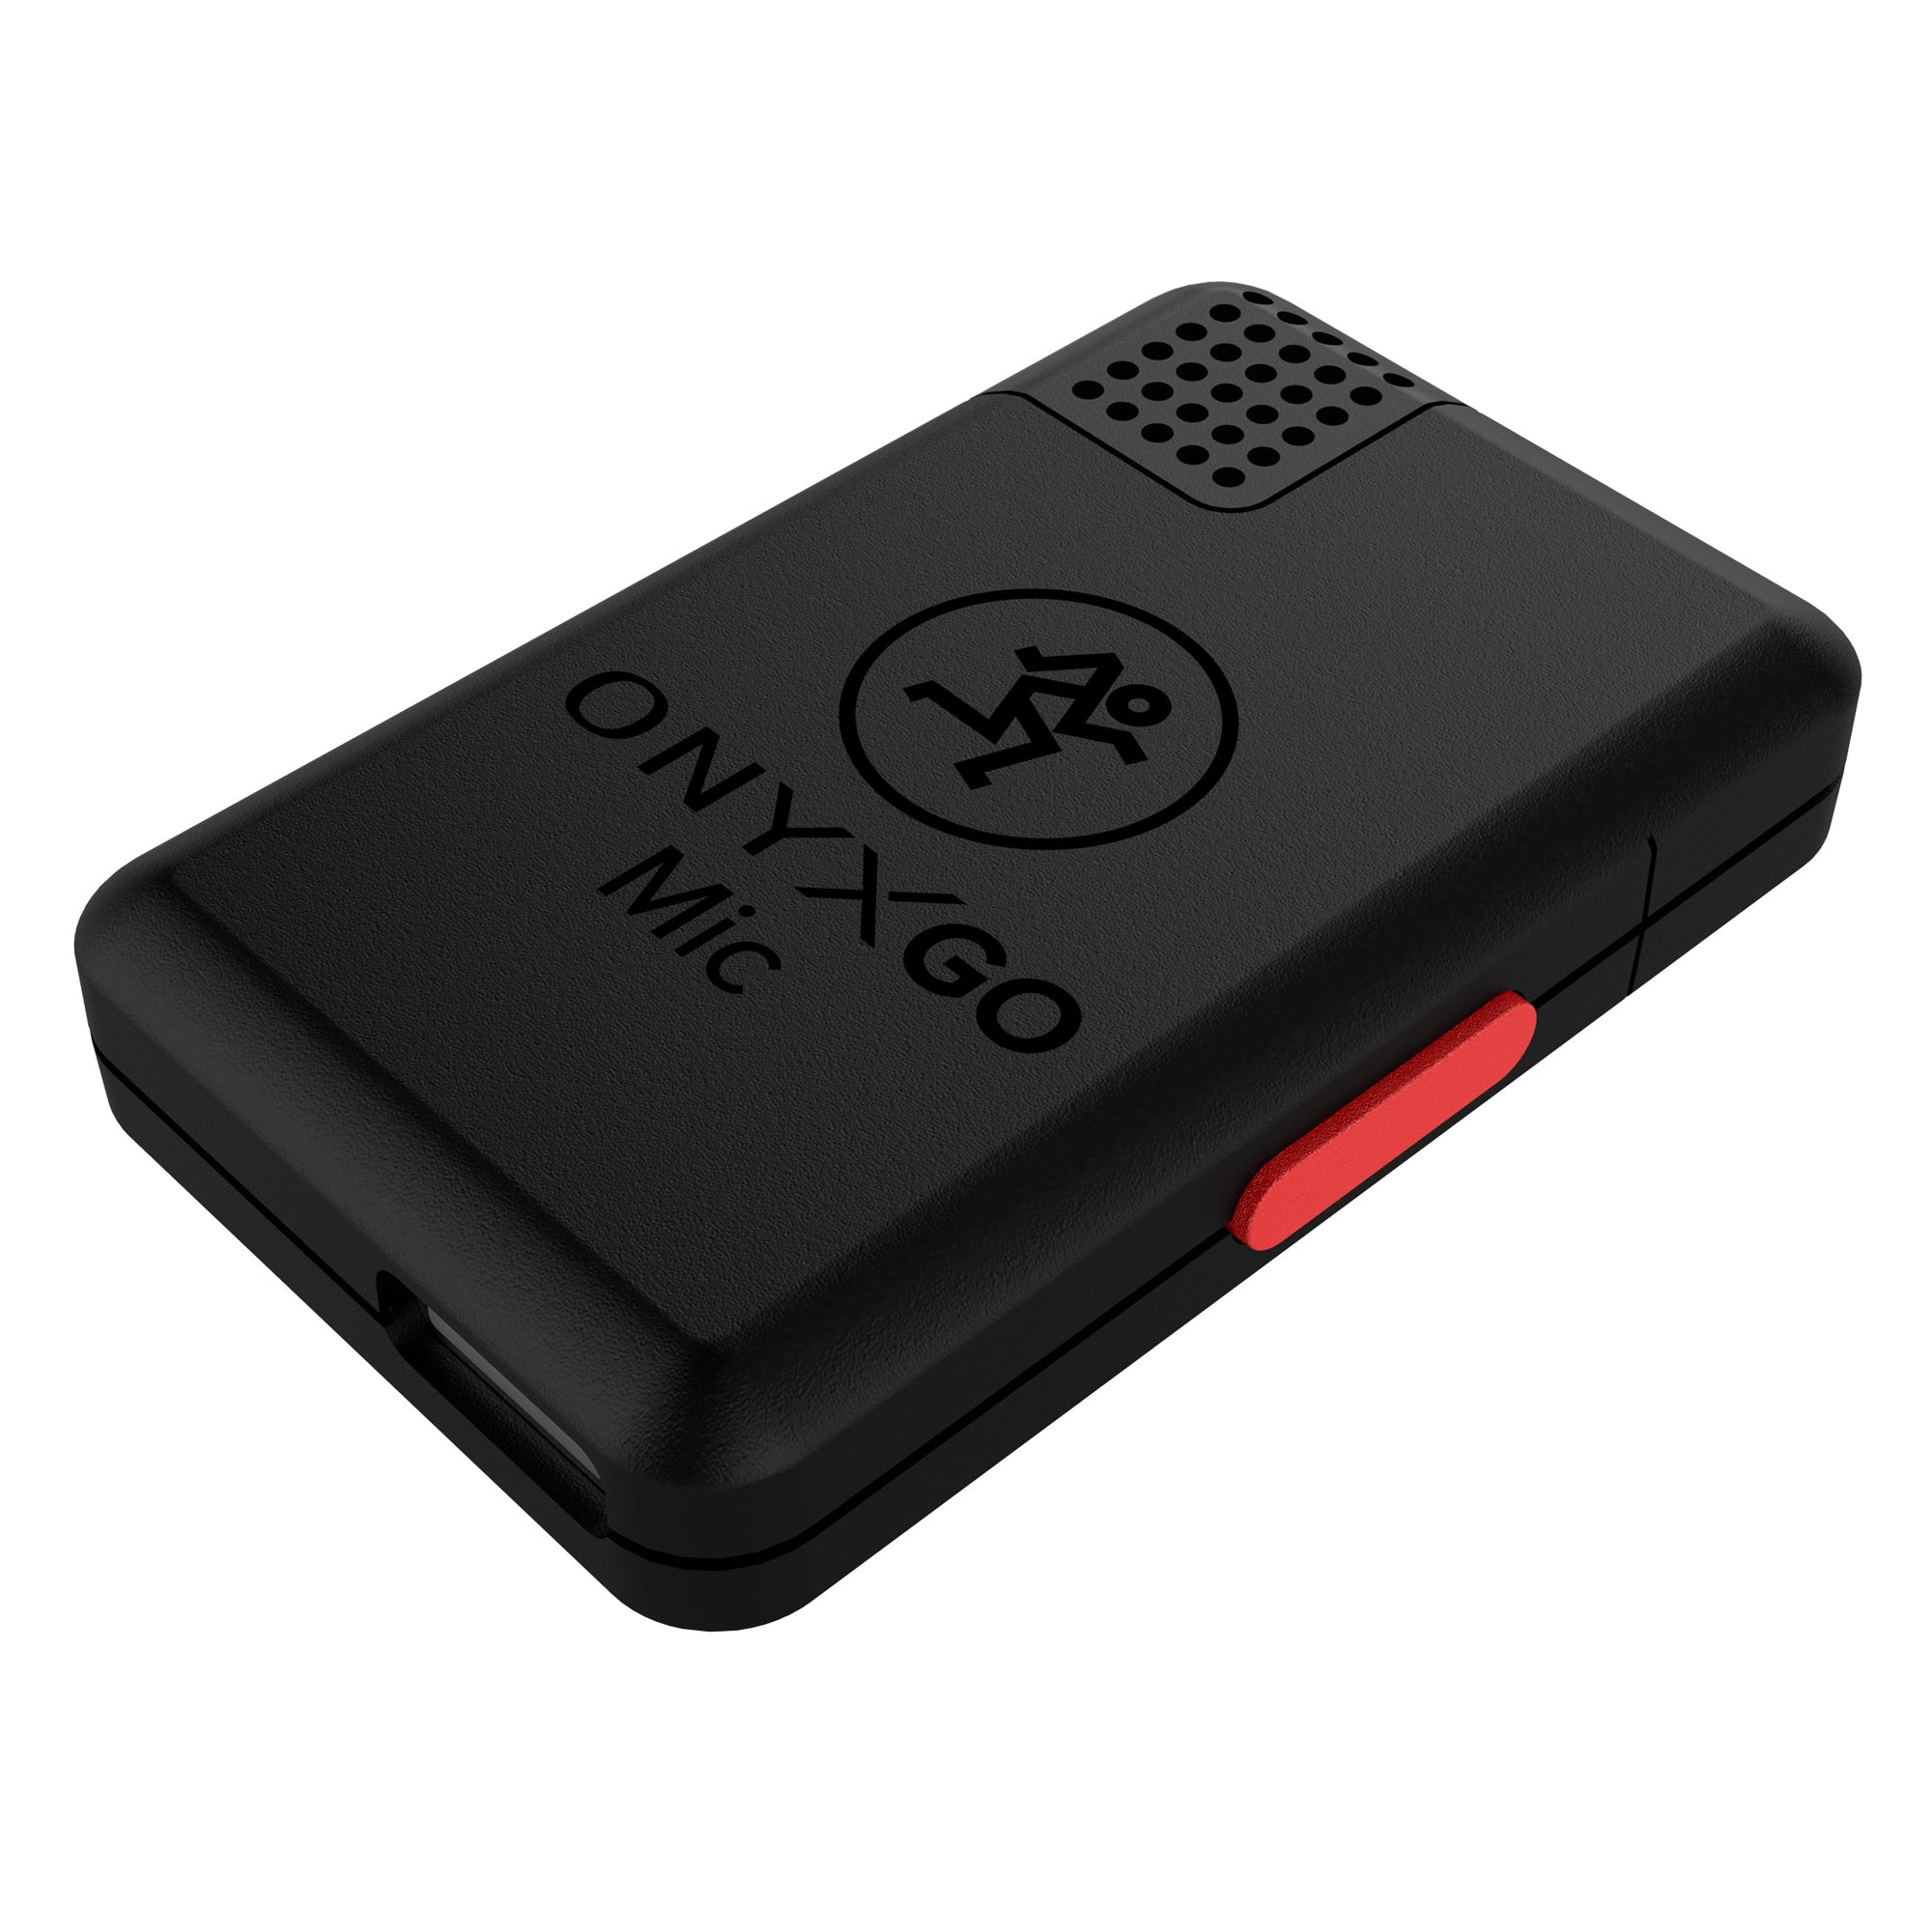 Mackie OnyxGO Wireless Clip-on Mic with App